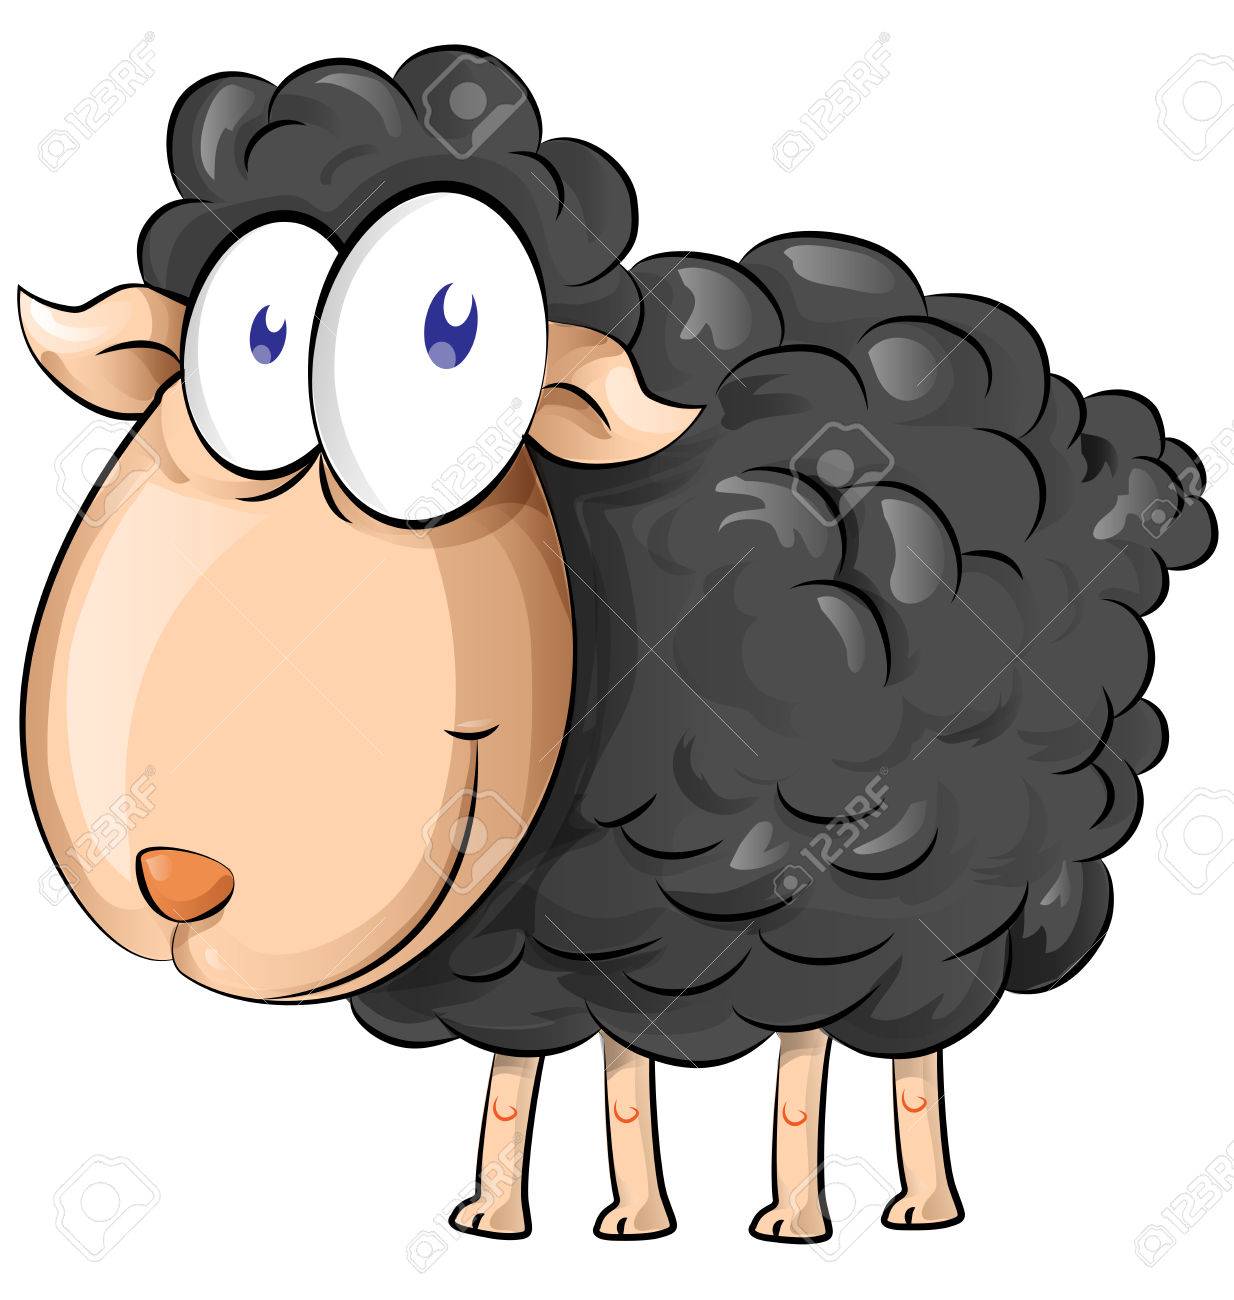 black sheep cartoon isolate on white background.